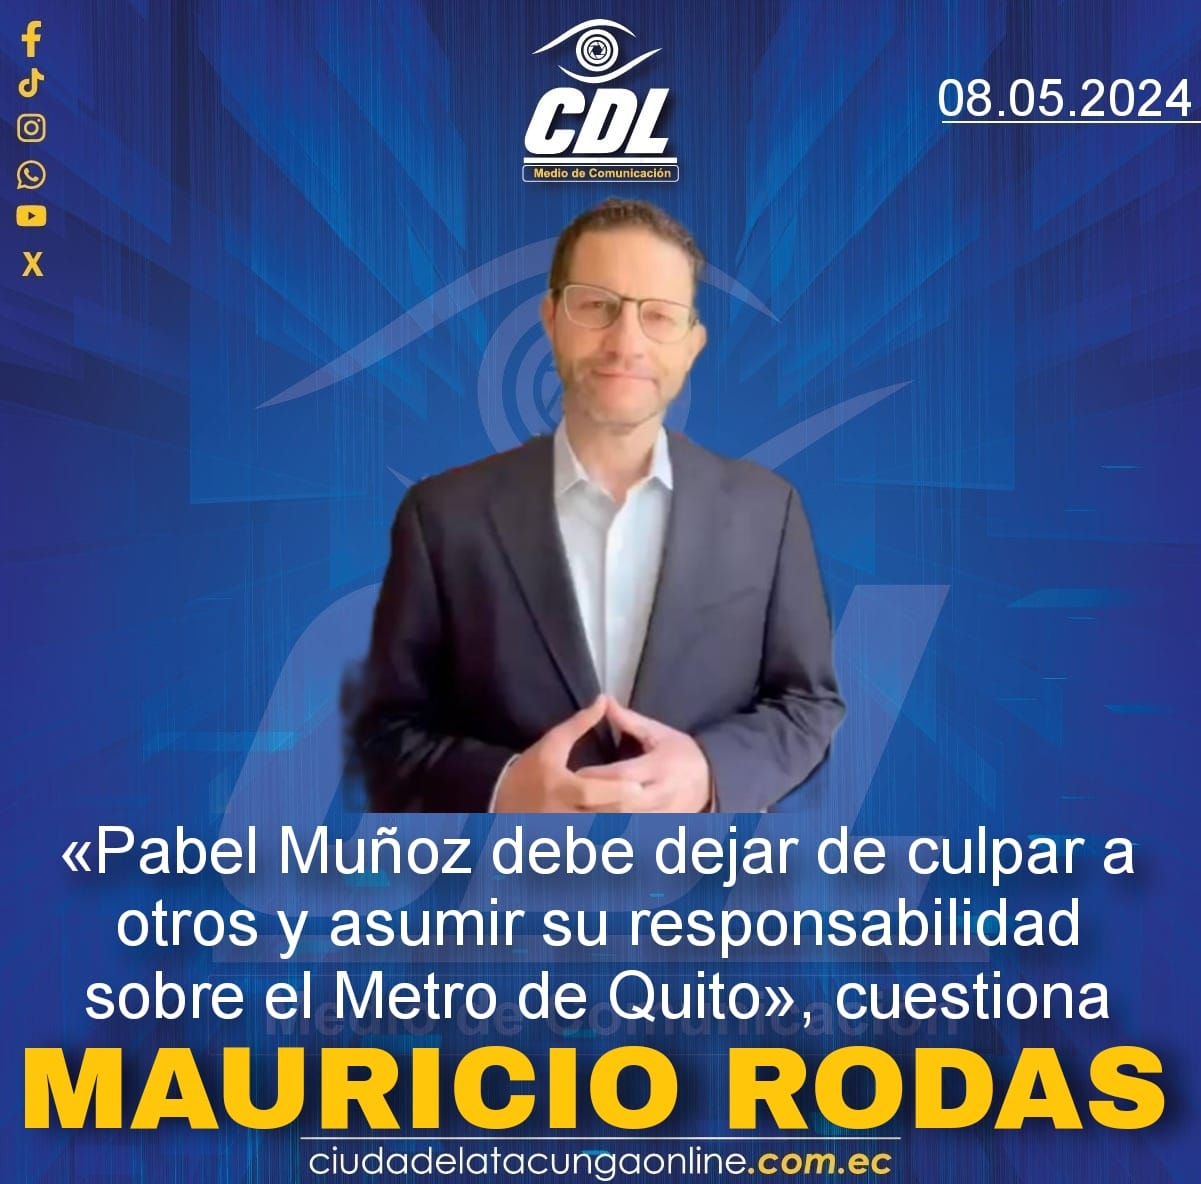 «Pabel Muñoz debe dejar de culpar a otros y asumir su responsabilidad sobre el Metro de Quito», cuestiona Mauricio Rodas